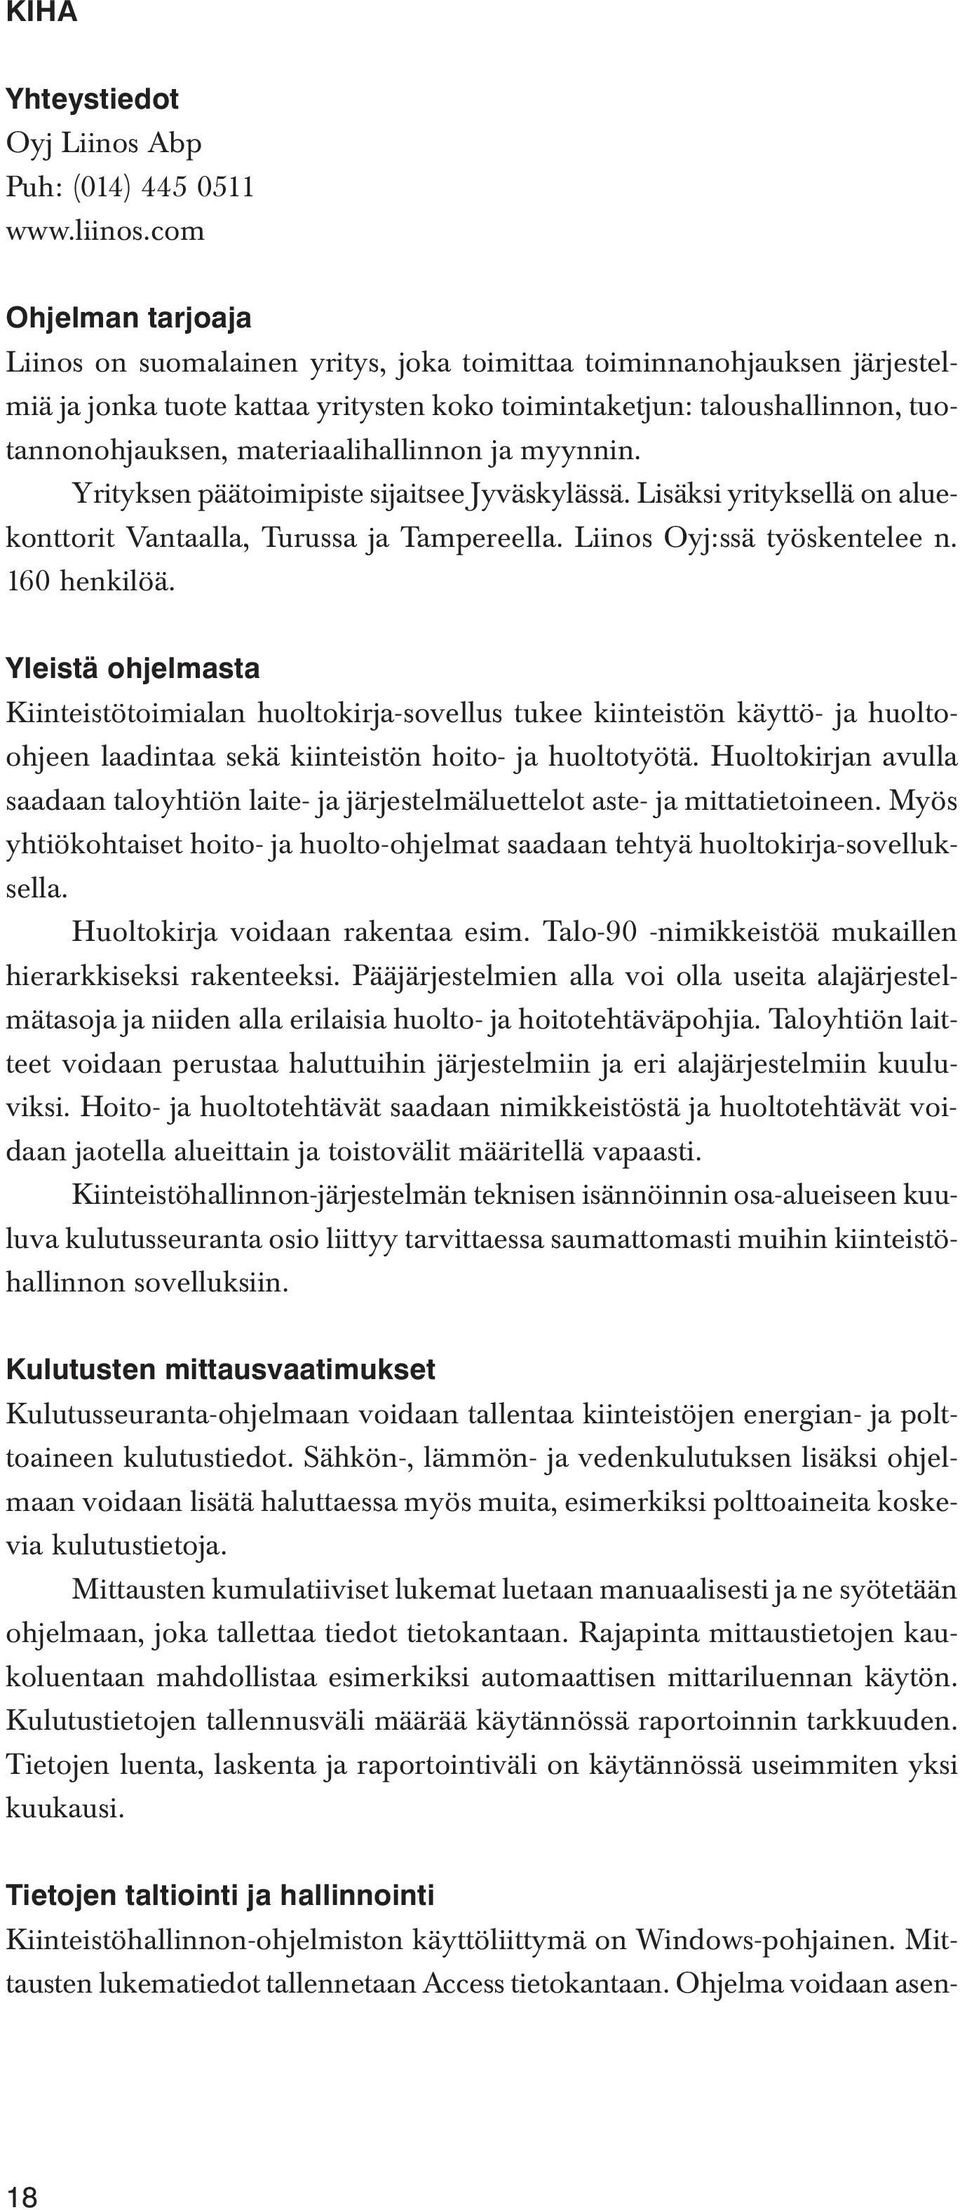 materiaalihallinnon ja myynnin. Yrityksen päätoimipiste sijaitsee Jyväskylässä. Lisäksi yrityksellä on aluekonttorit Vantaalla, Turussa ja Tampereella. Liinos Oyj:ssä työskentelee n. 160 henkilöä.